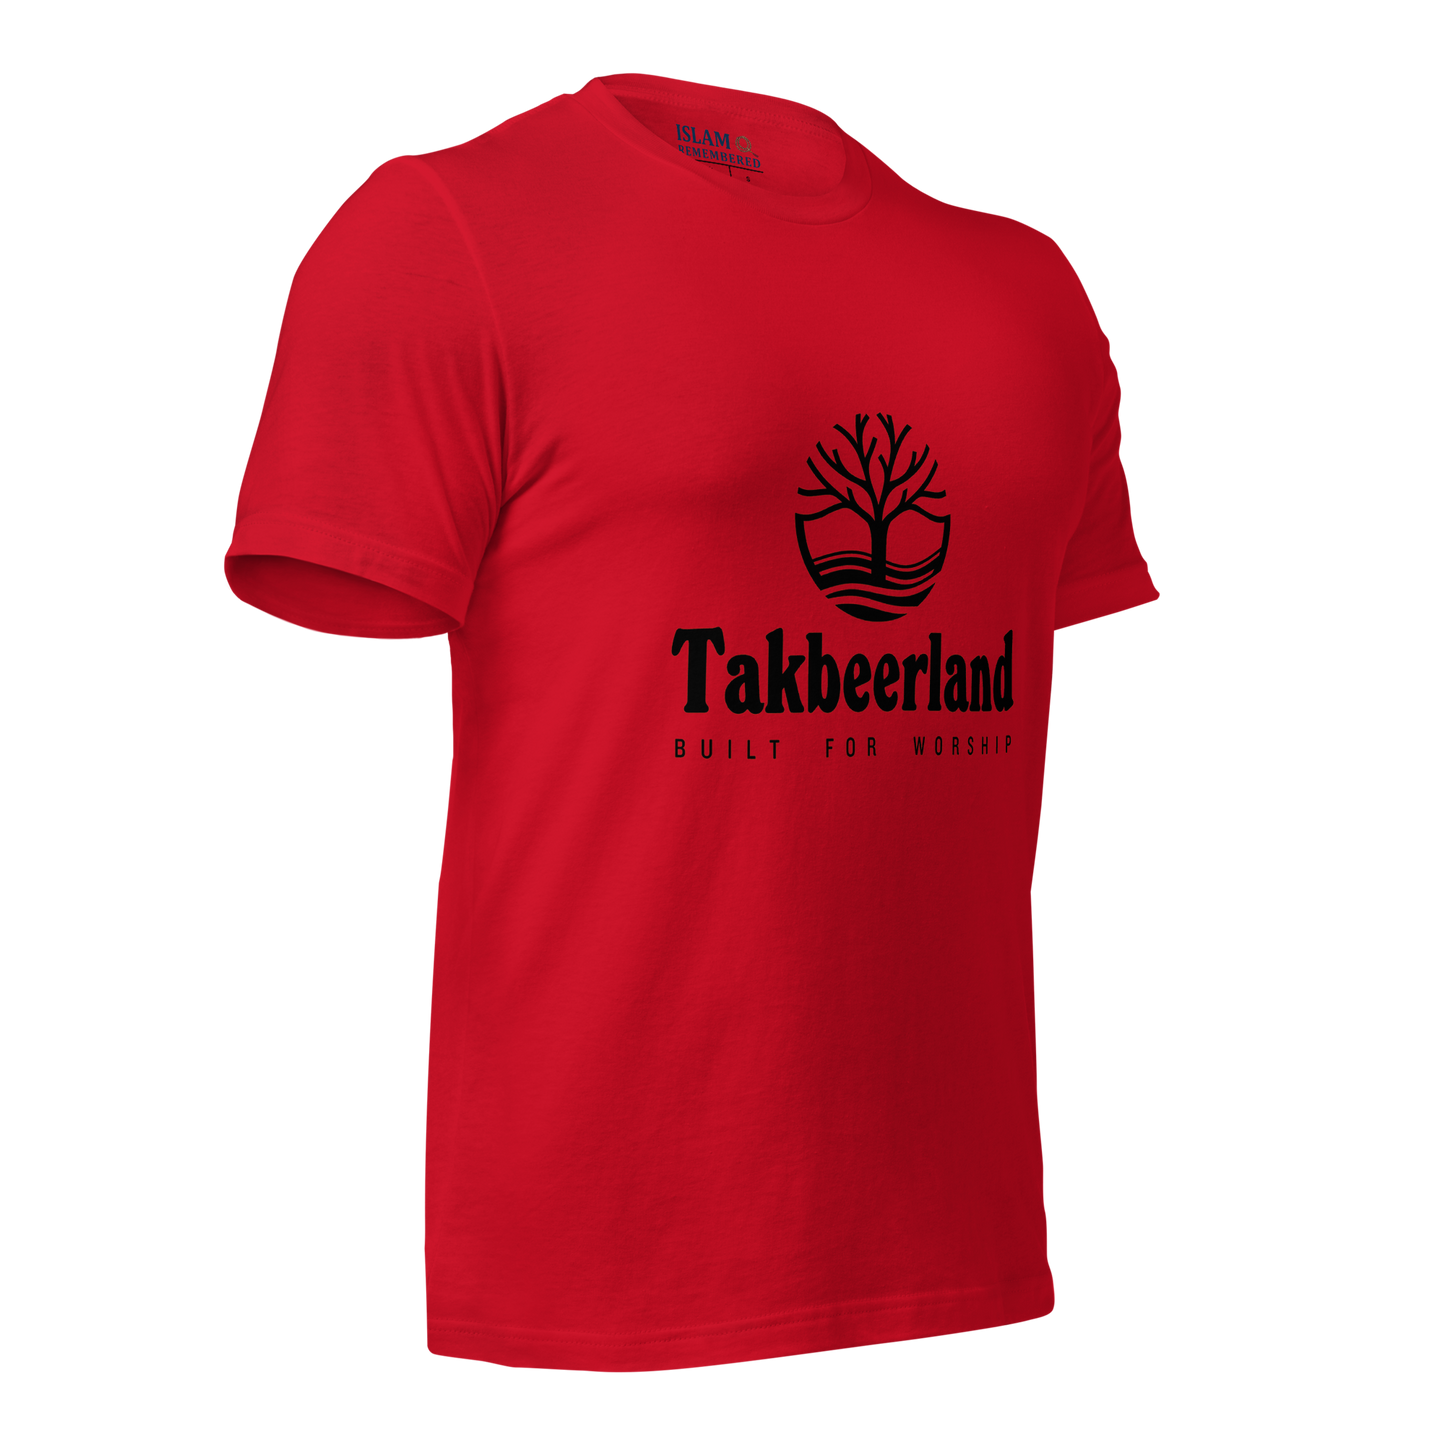 ADULT T-Shirt - TAKBEERLAND FULL LOGO (Centered/Medium) - Black